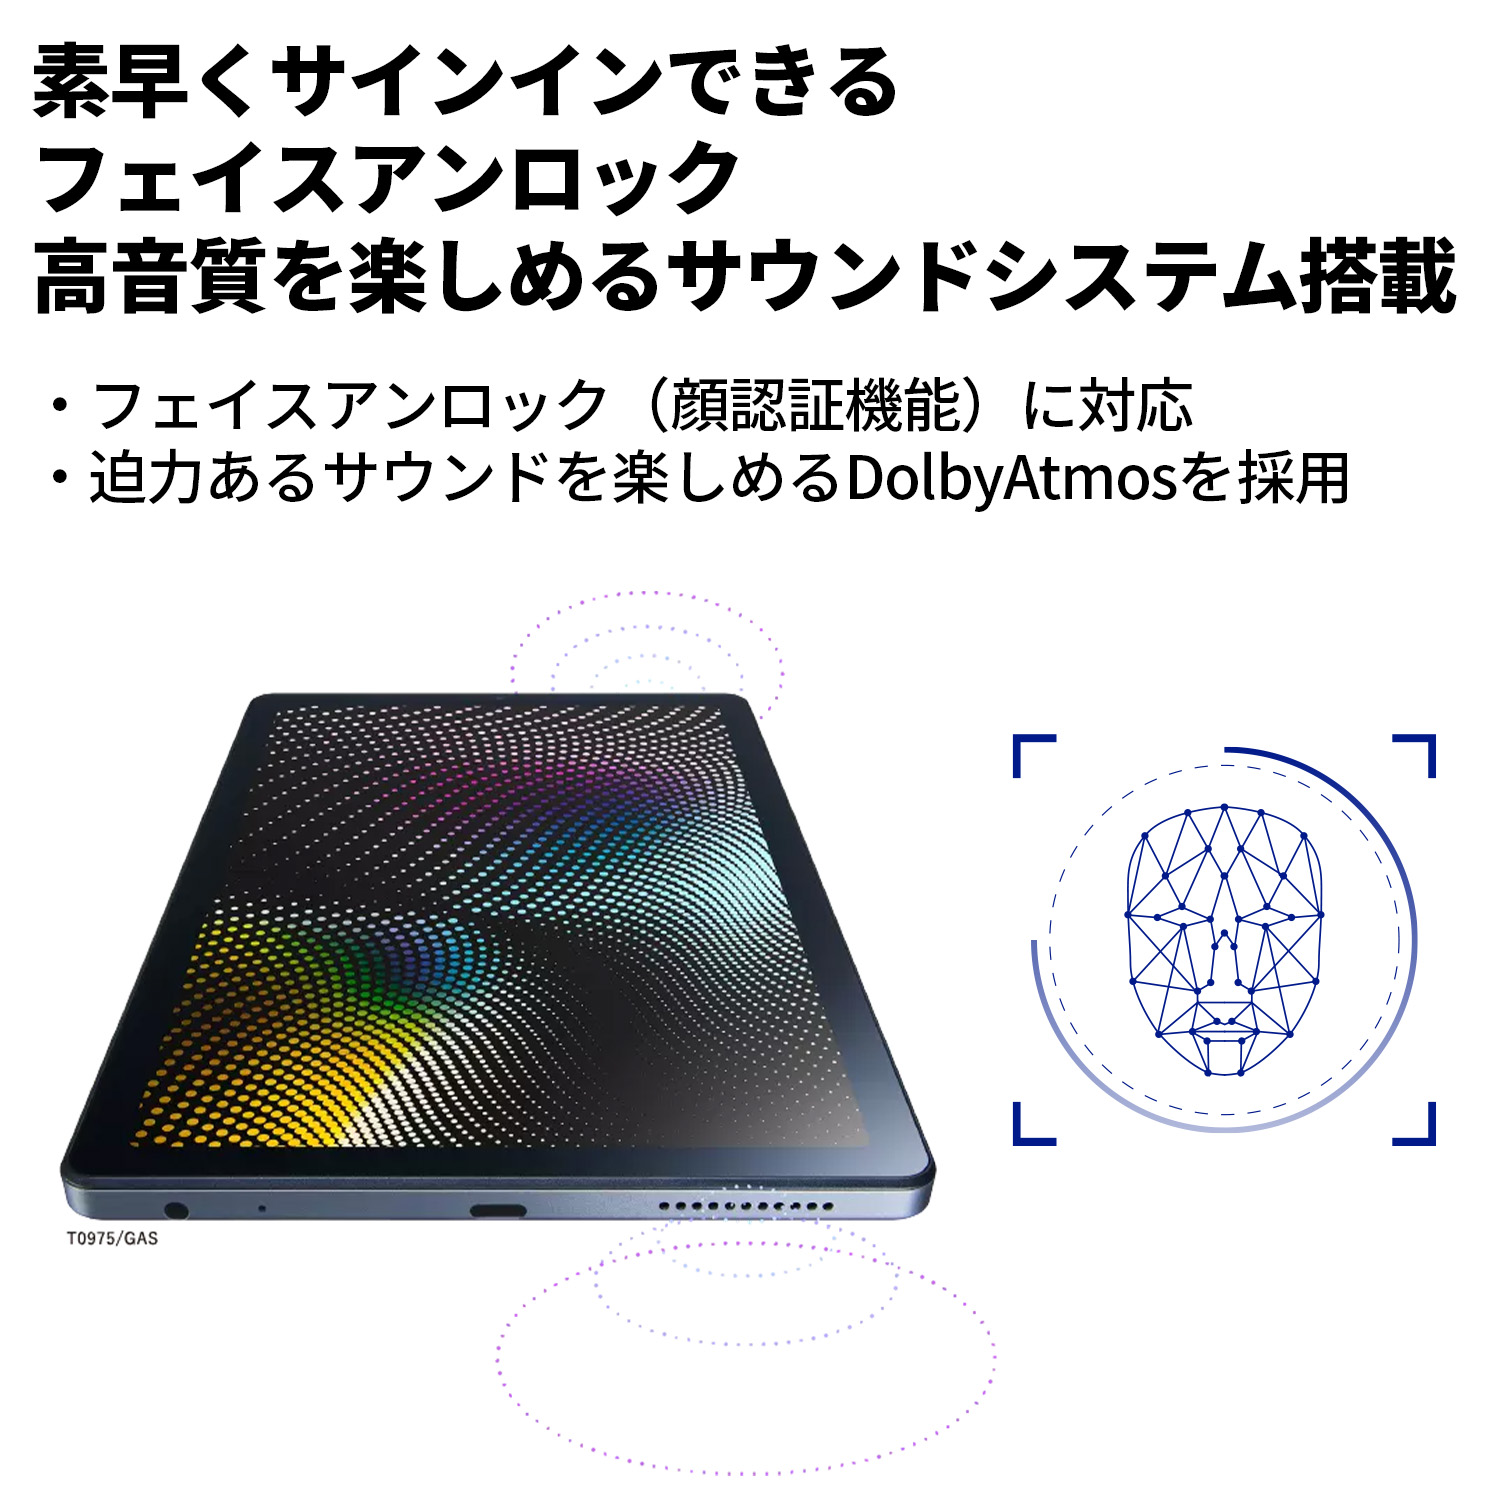 公式】 NEC LAVIE 日本 メーカー タブレット Android 12 wi-fiモデル 